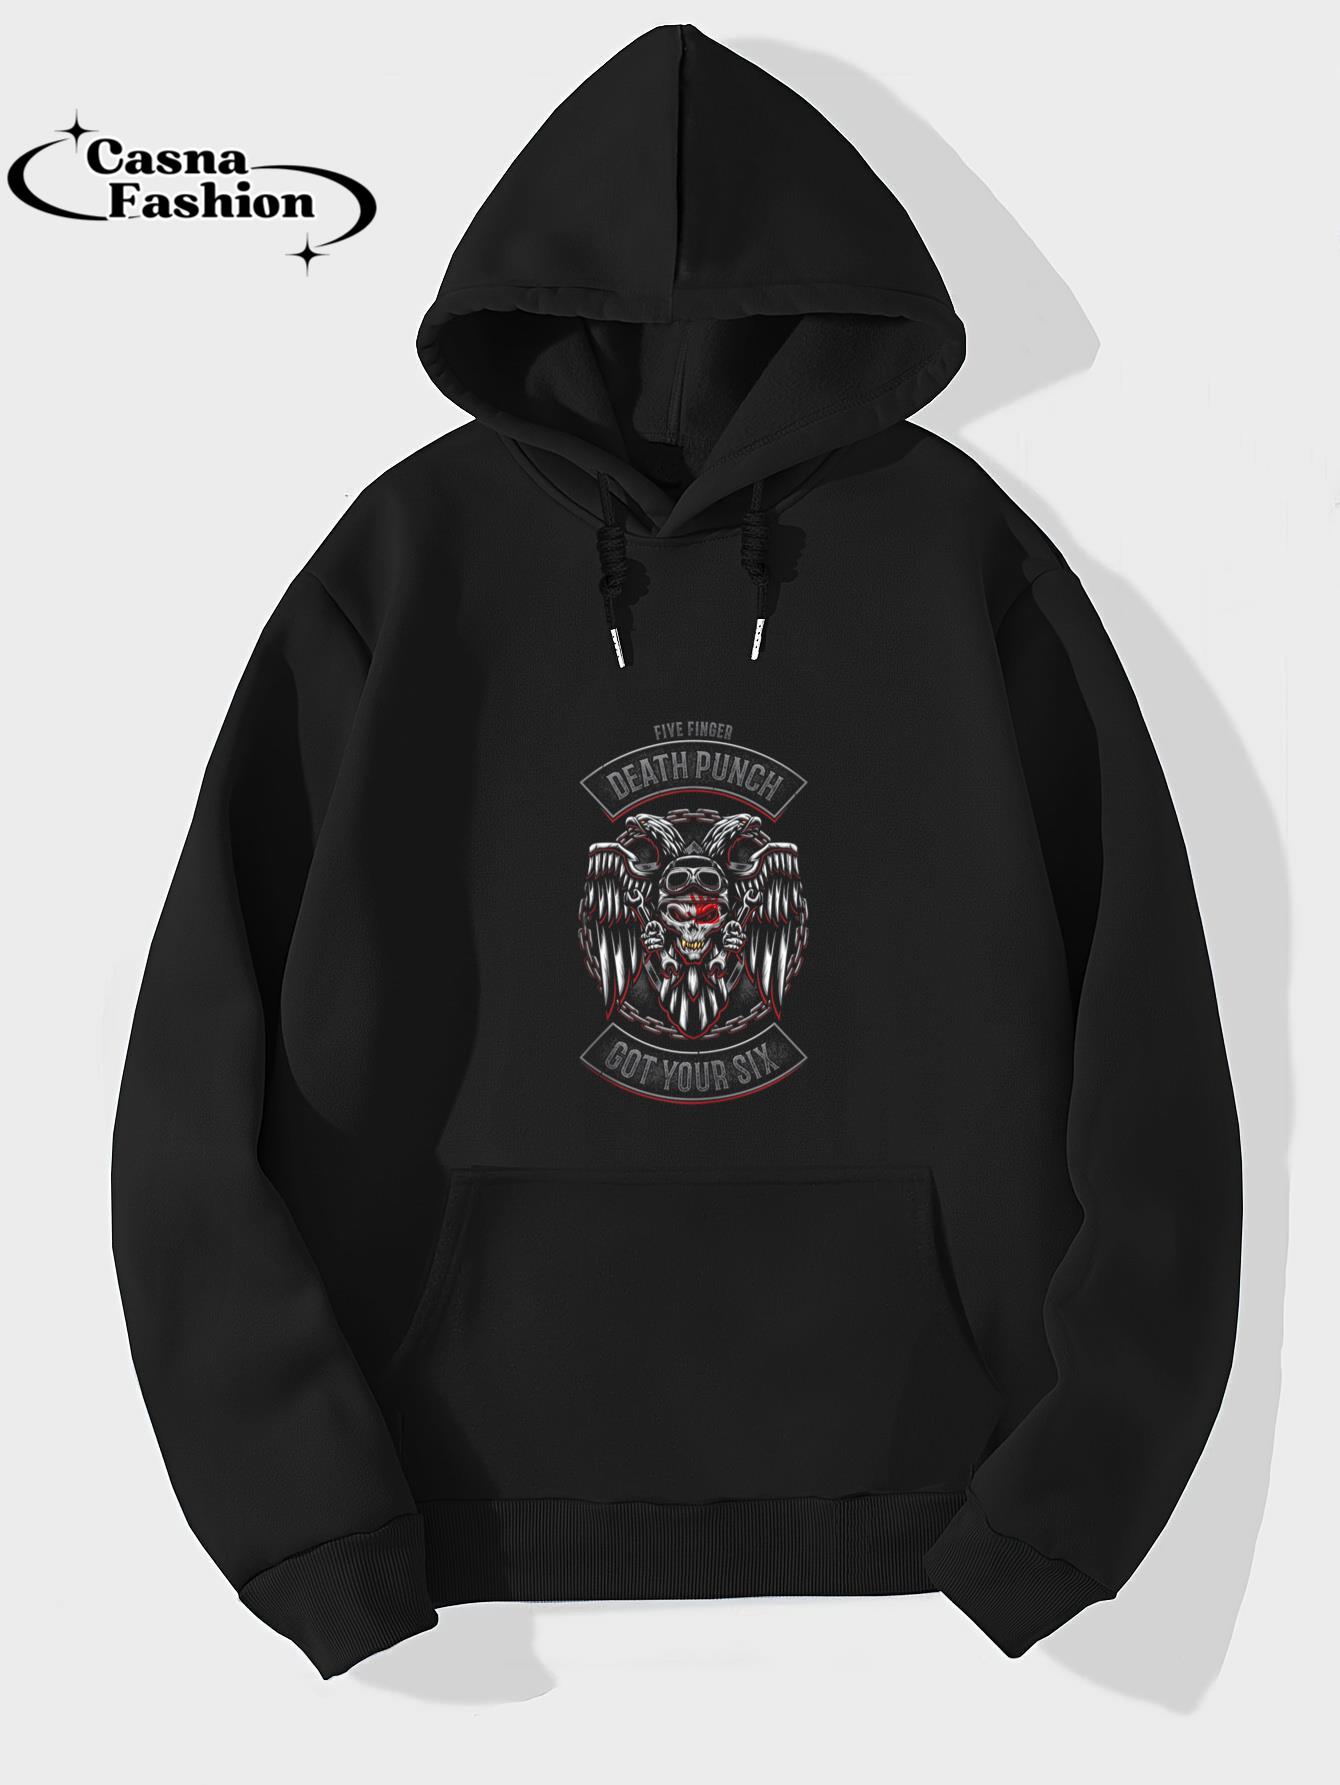 casnafashion_Hoodie_5FDP - Biker Badge - Got Your Six Tank Top_hoodie_black hoodie